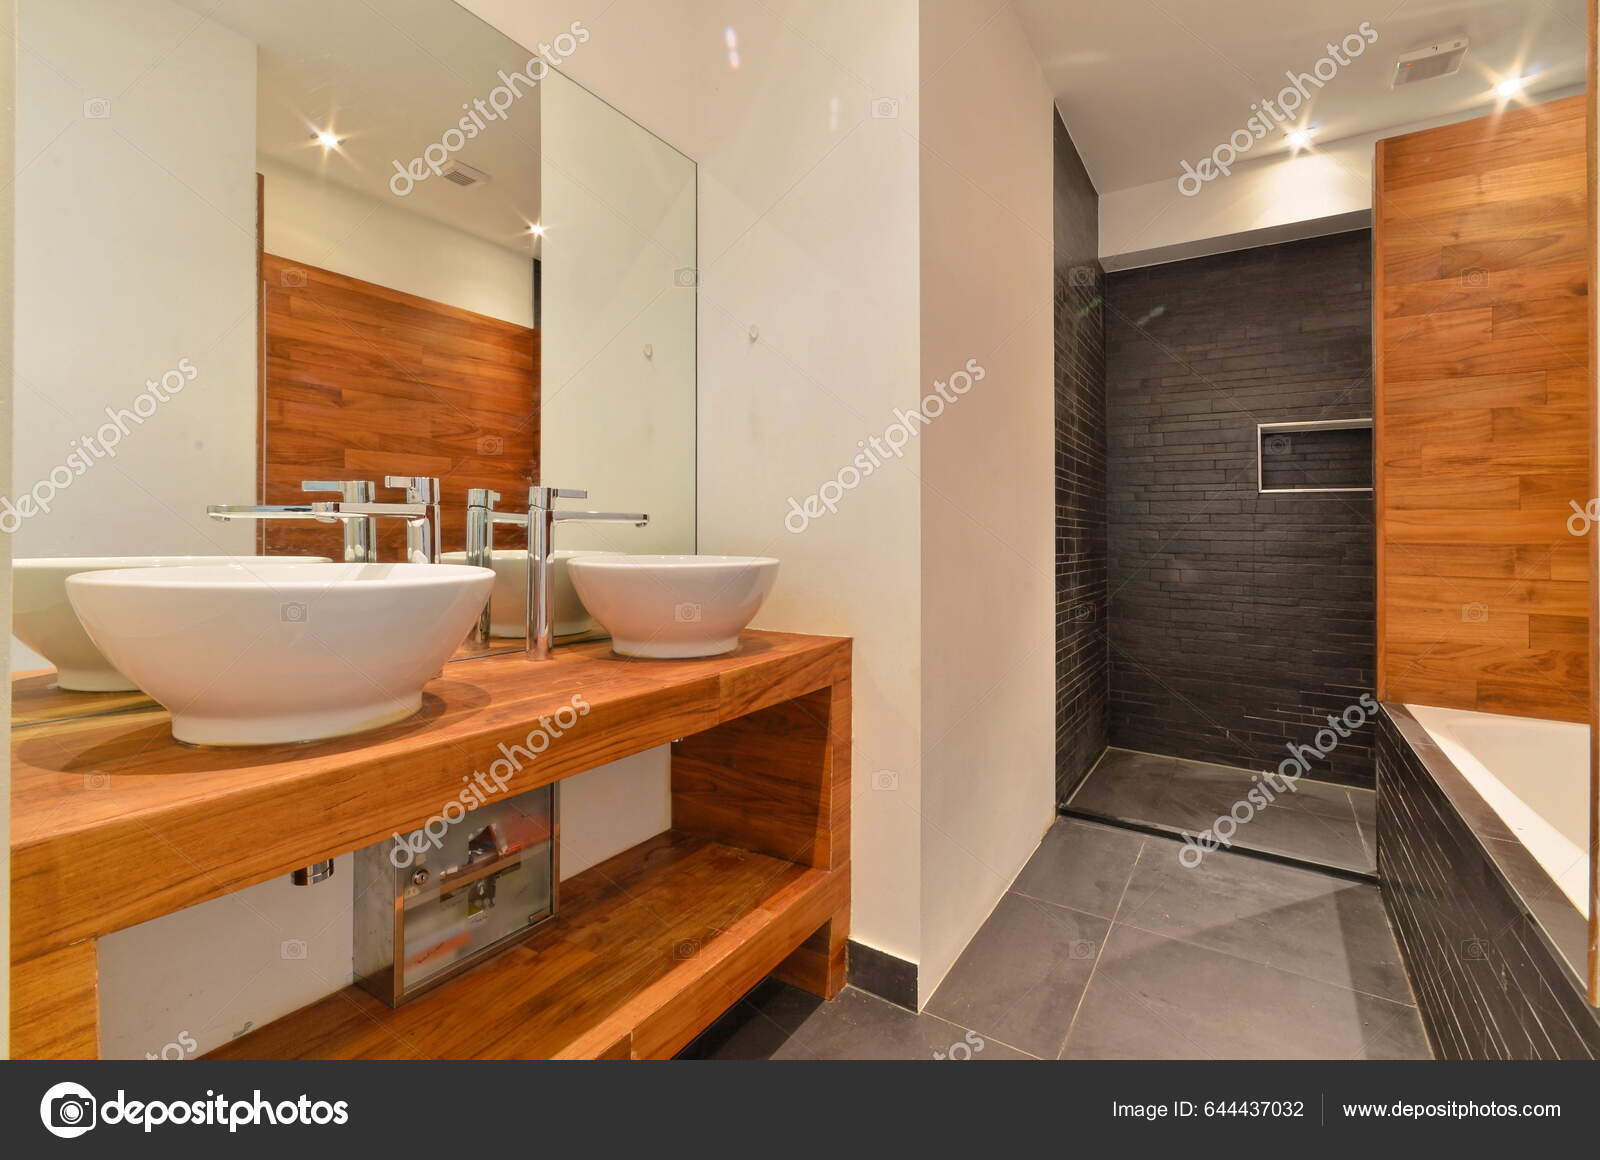 Ett Badrum Med Två Handfat Och Stor Spegel Väggen Bredvid — Stockfotografi  © procontributors #644437032